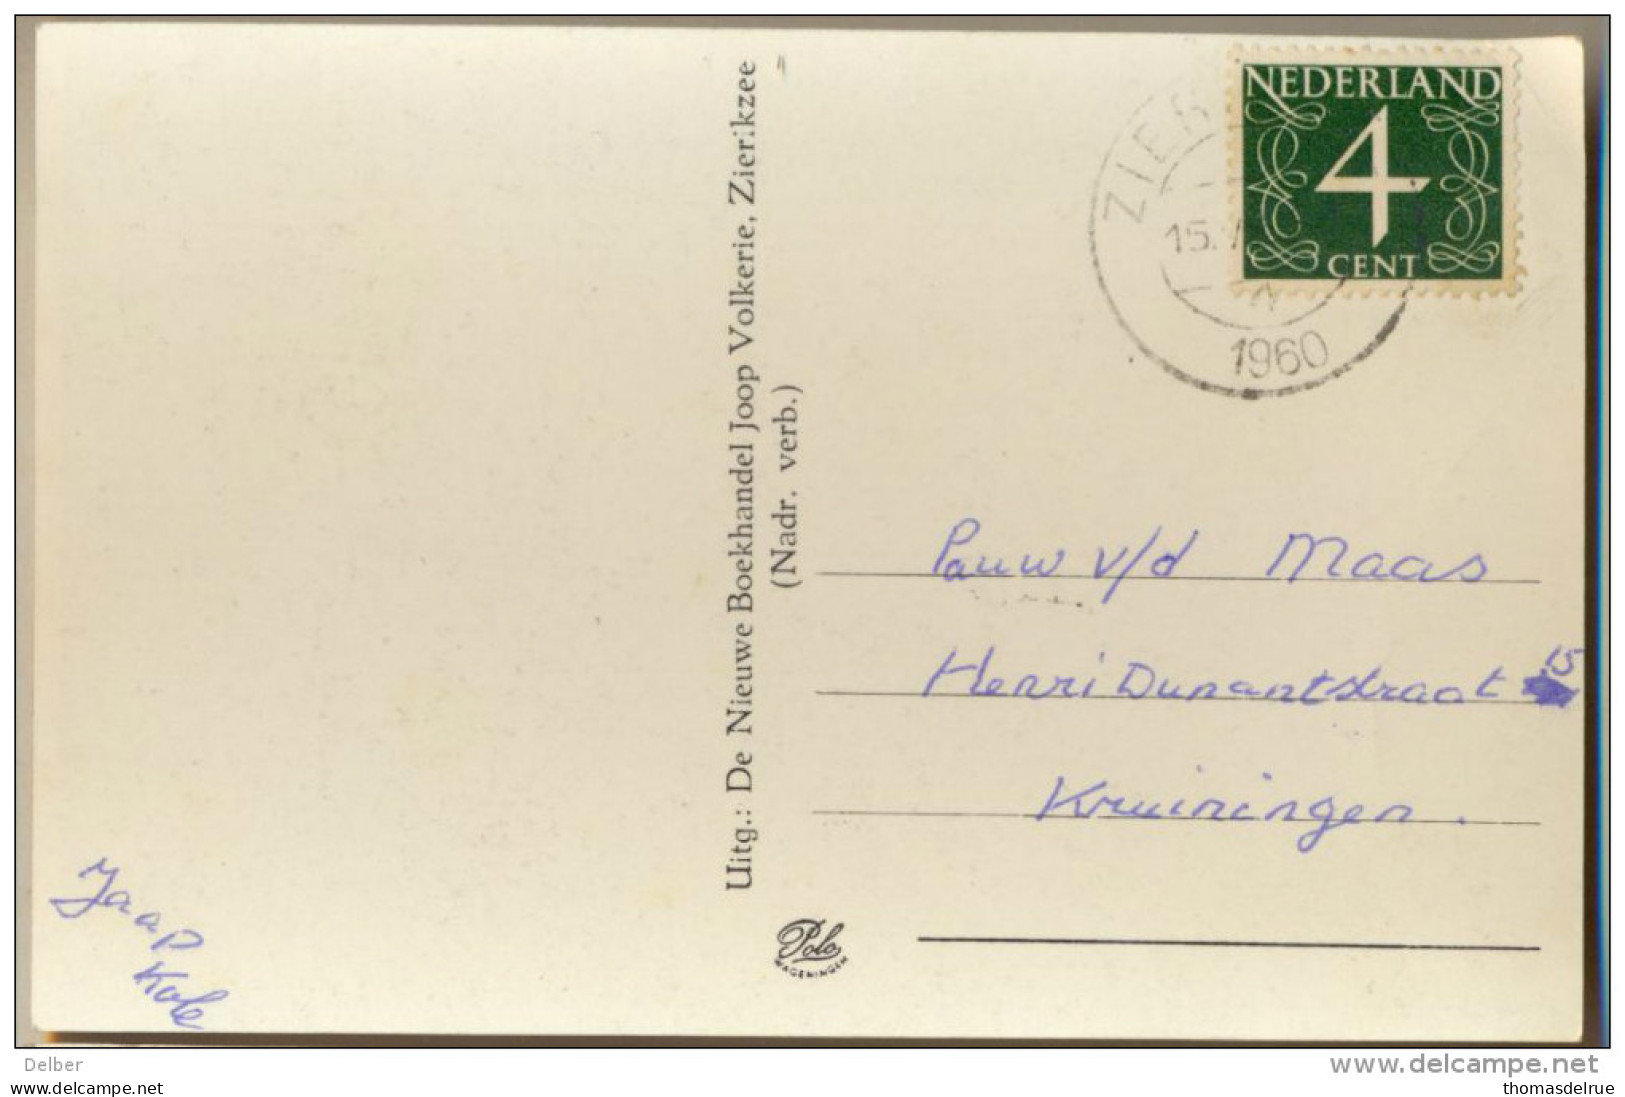 _4cp999: Groeten Uit Zierikzee : St. Lieven Monstertoren - Stadhuis - Noord-Havenpoort 1960 - Zierikzee